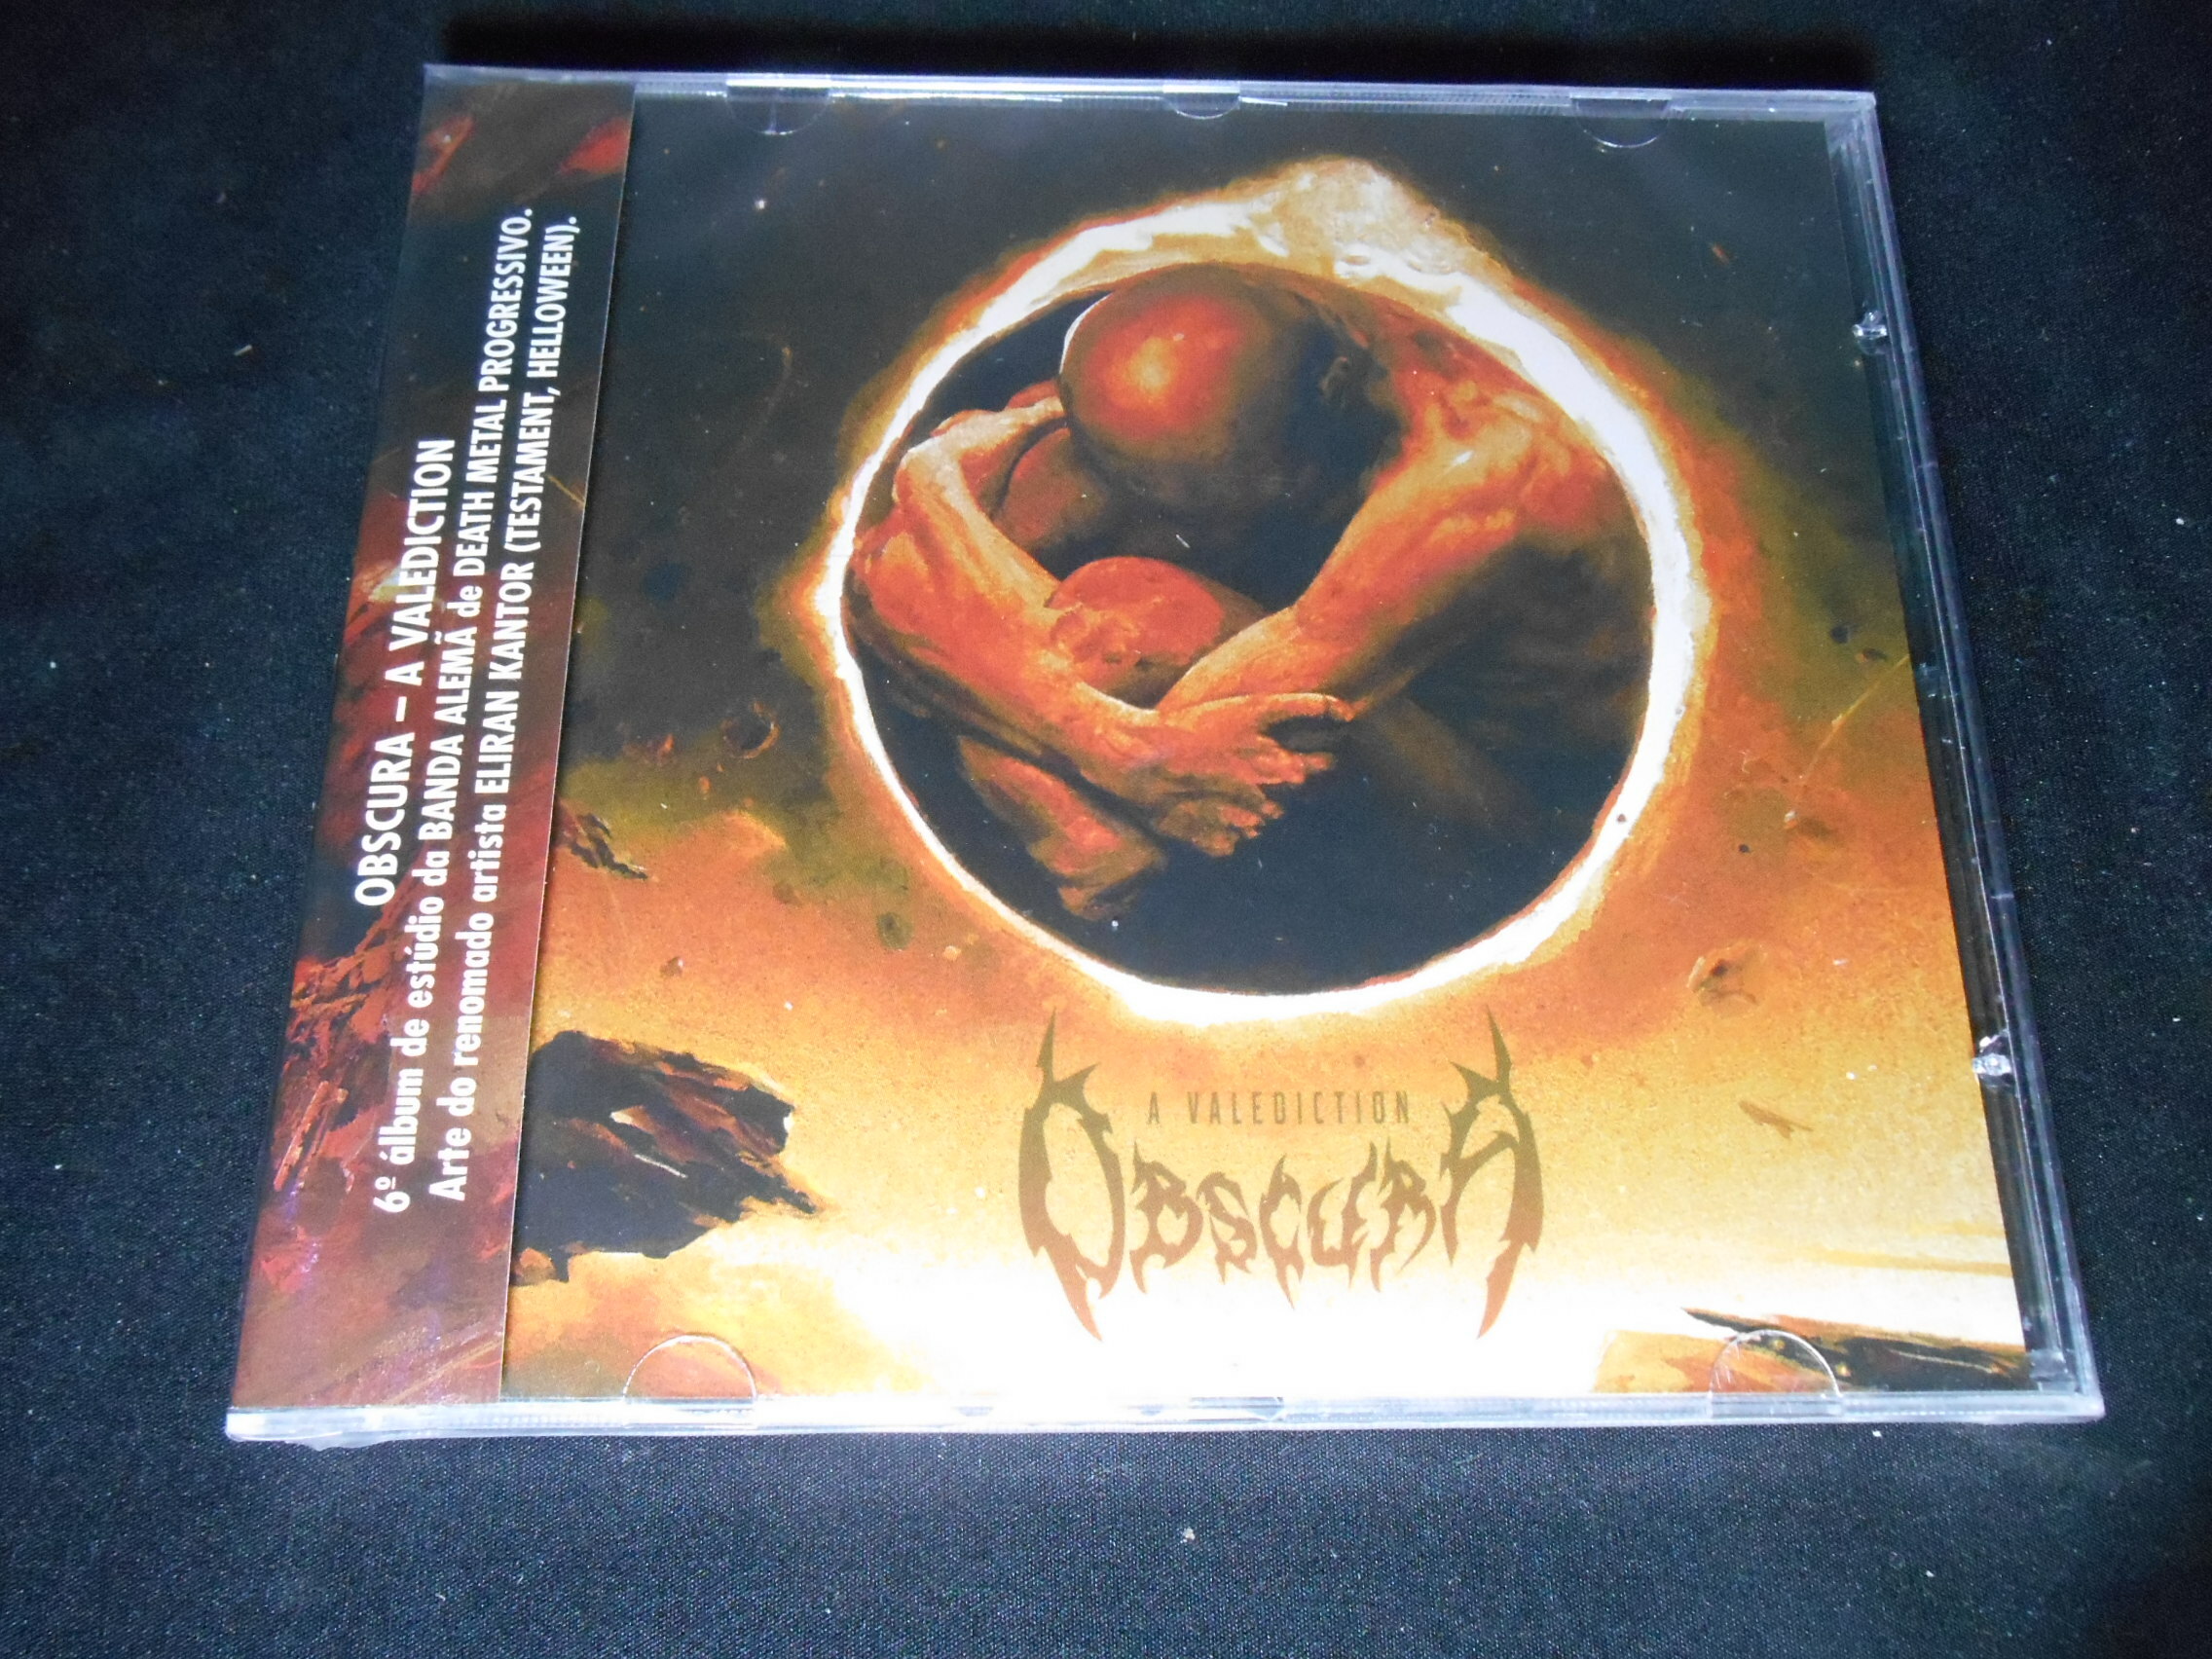 CD - Obscura - A Valediction (lacrado)